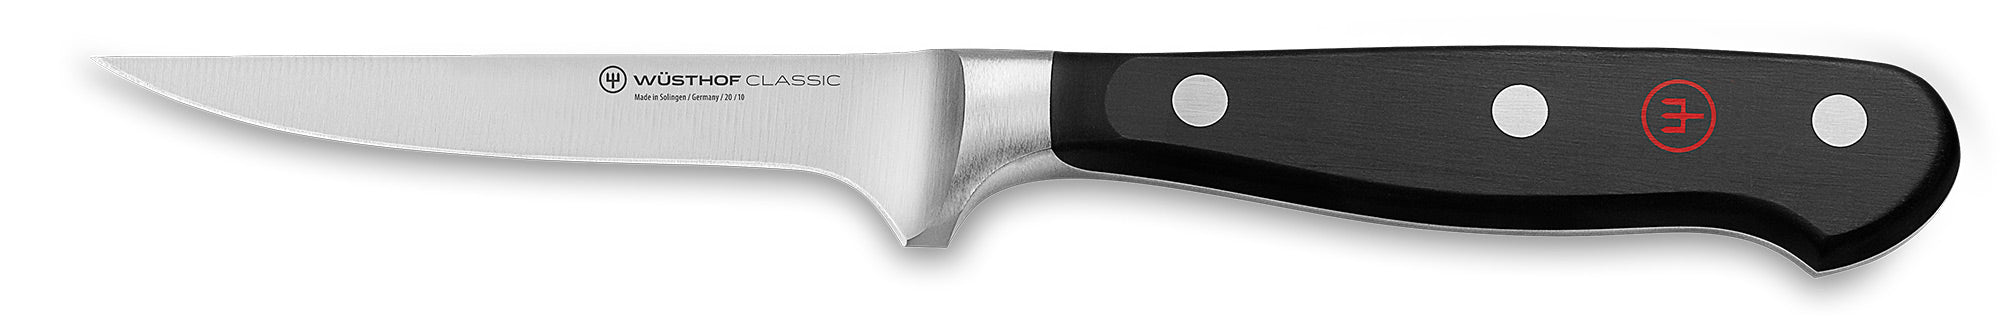 Wusthof Classic 4602 Boning Knife Canada